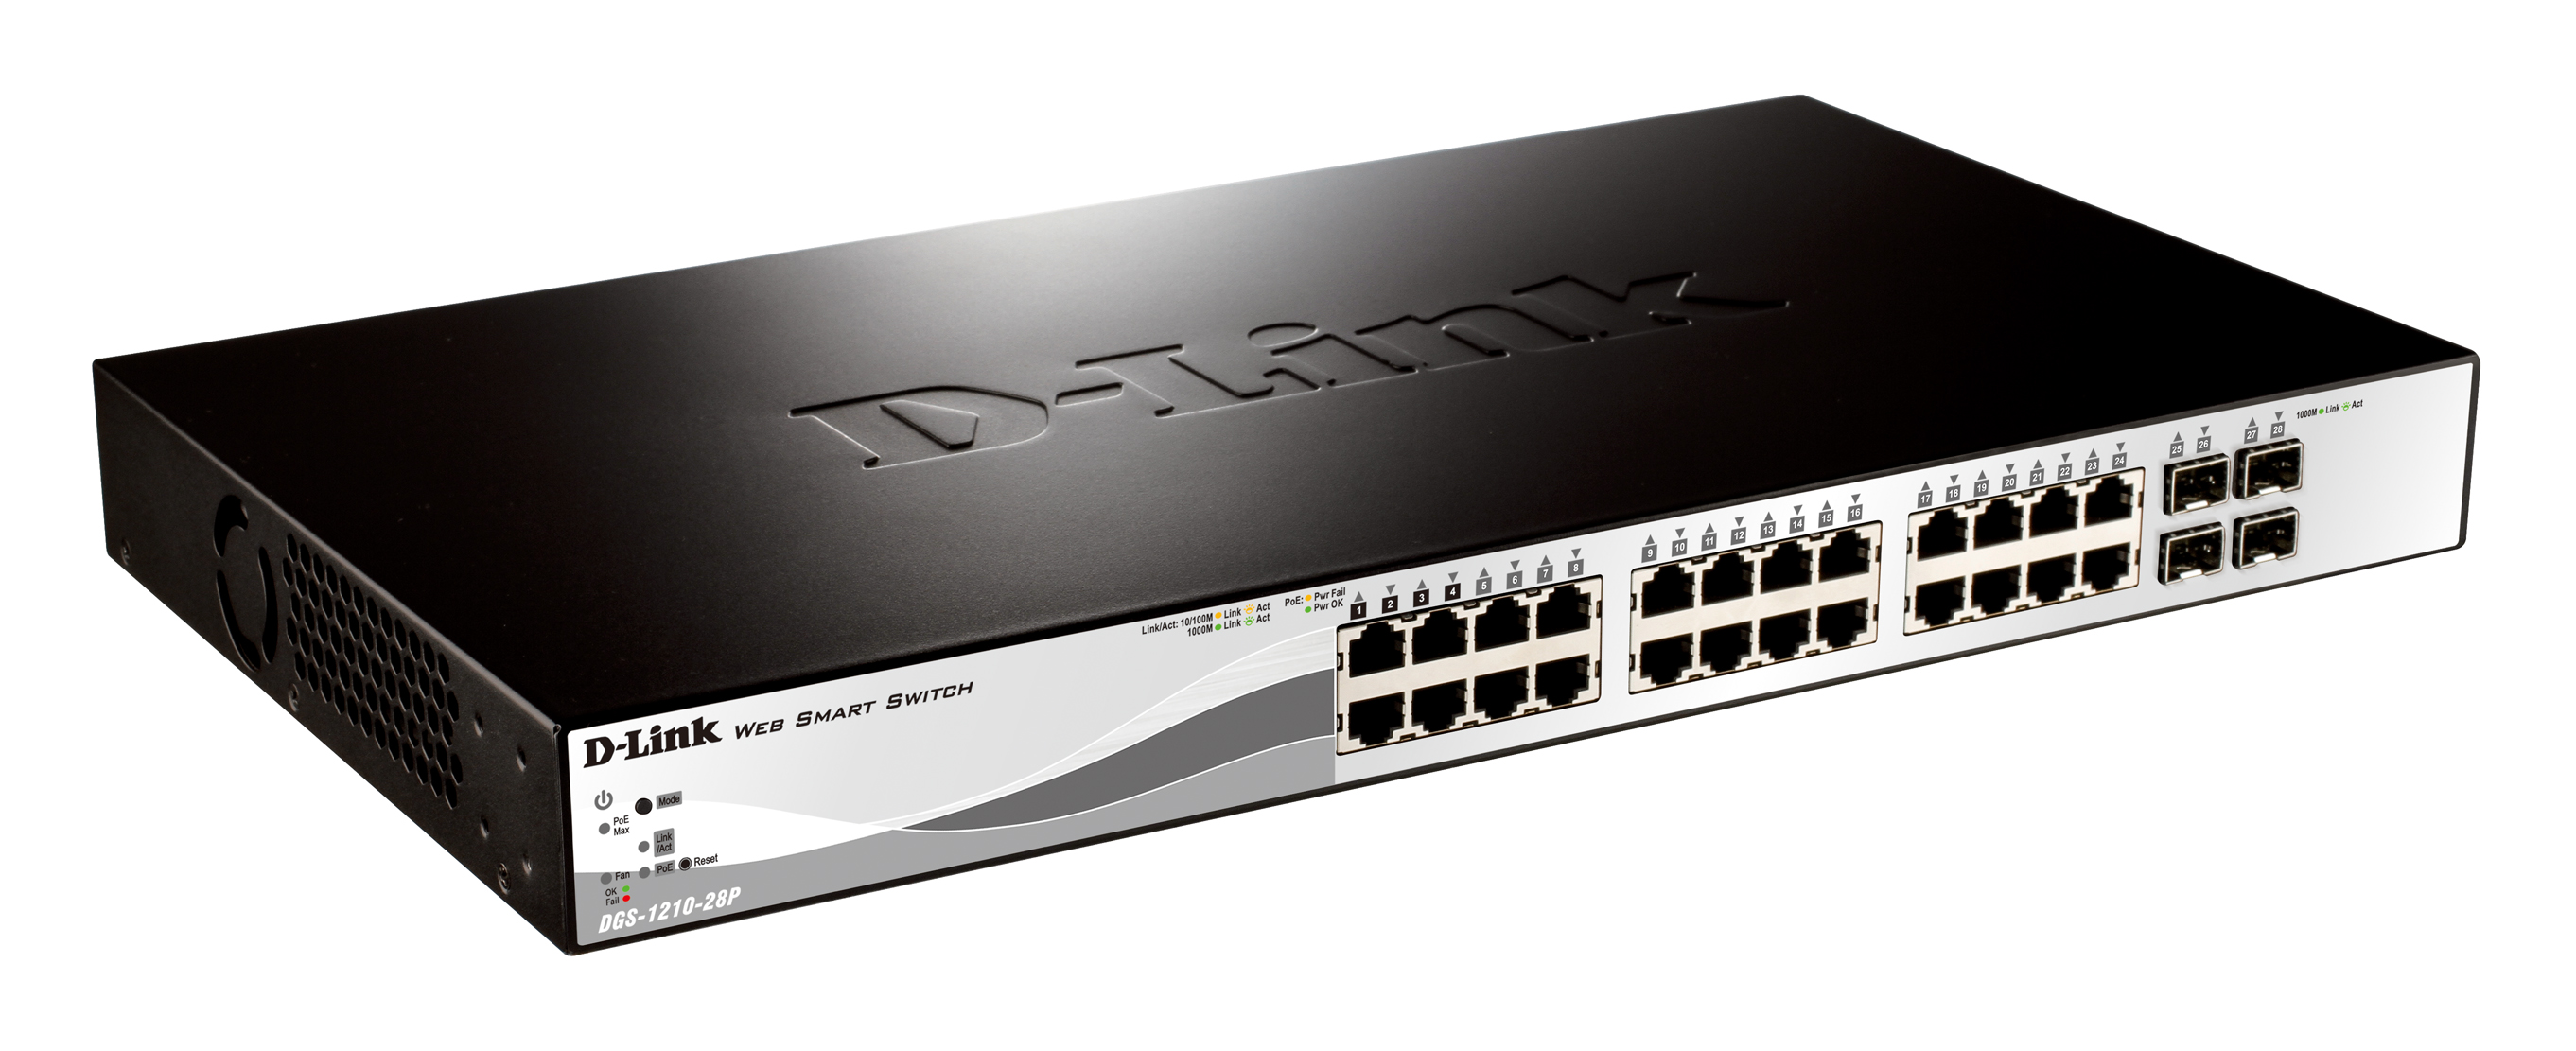 D Link Switch D-Link DGS-1210-28P, 24 porturi Gigabit PoE Base-T, 4 porturi SFP 1000Mbps, rackabil